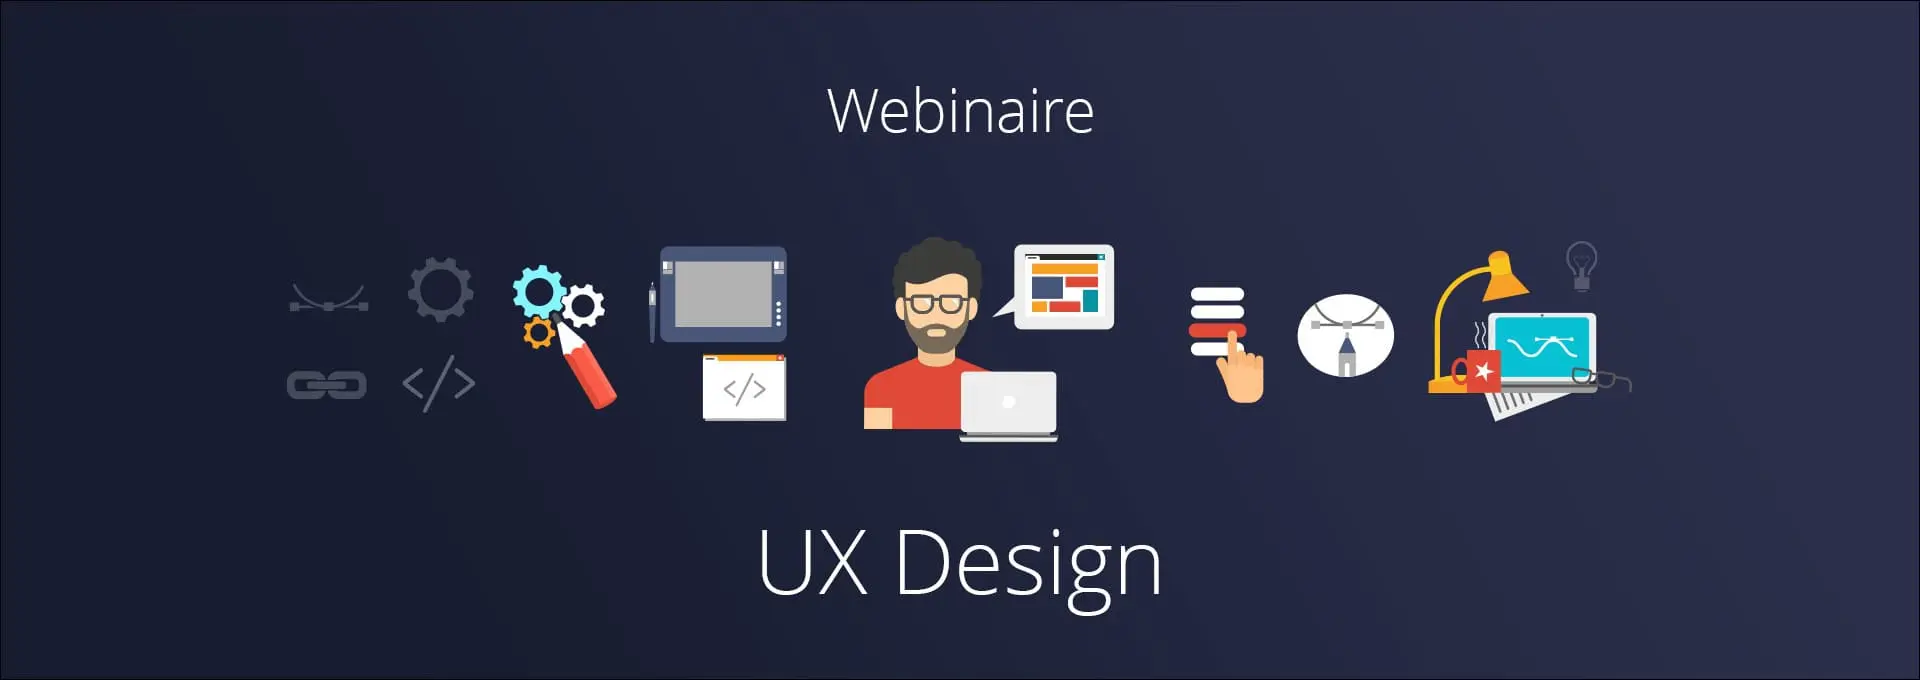 Actualités Webinaires - UX Design